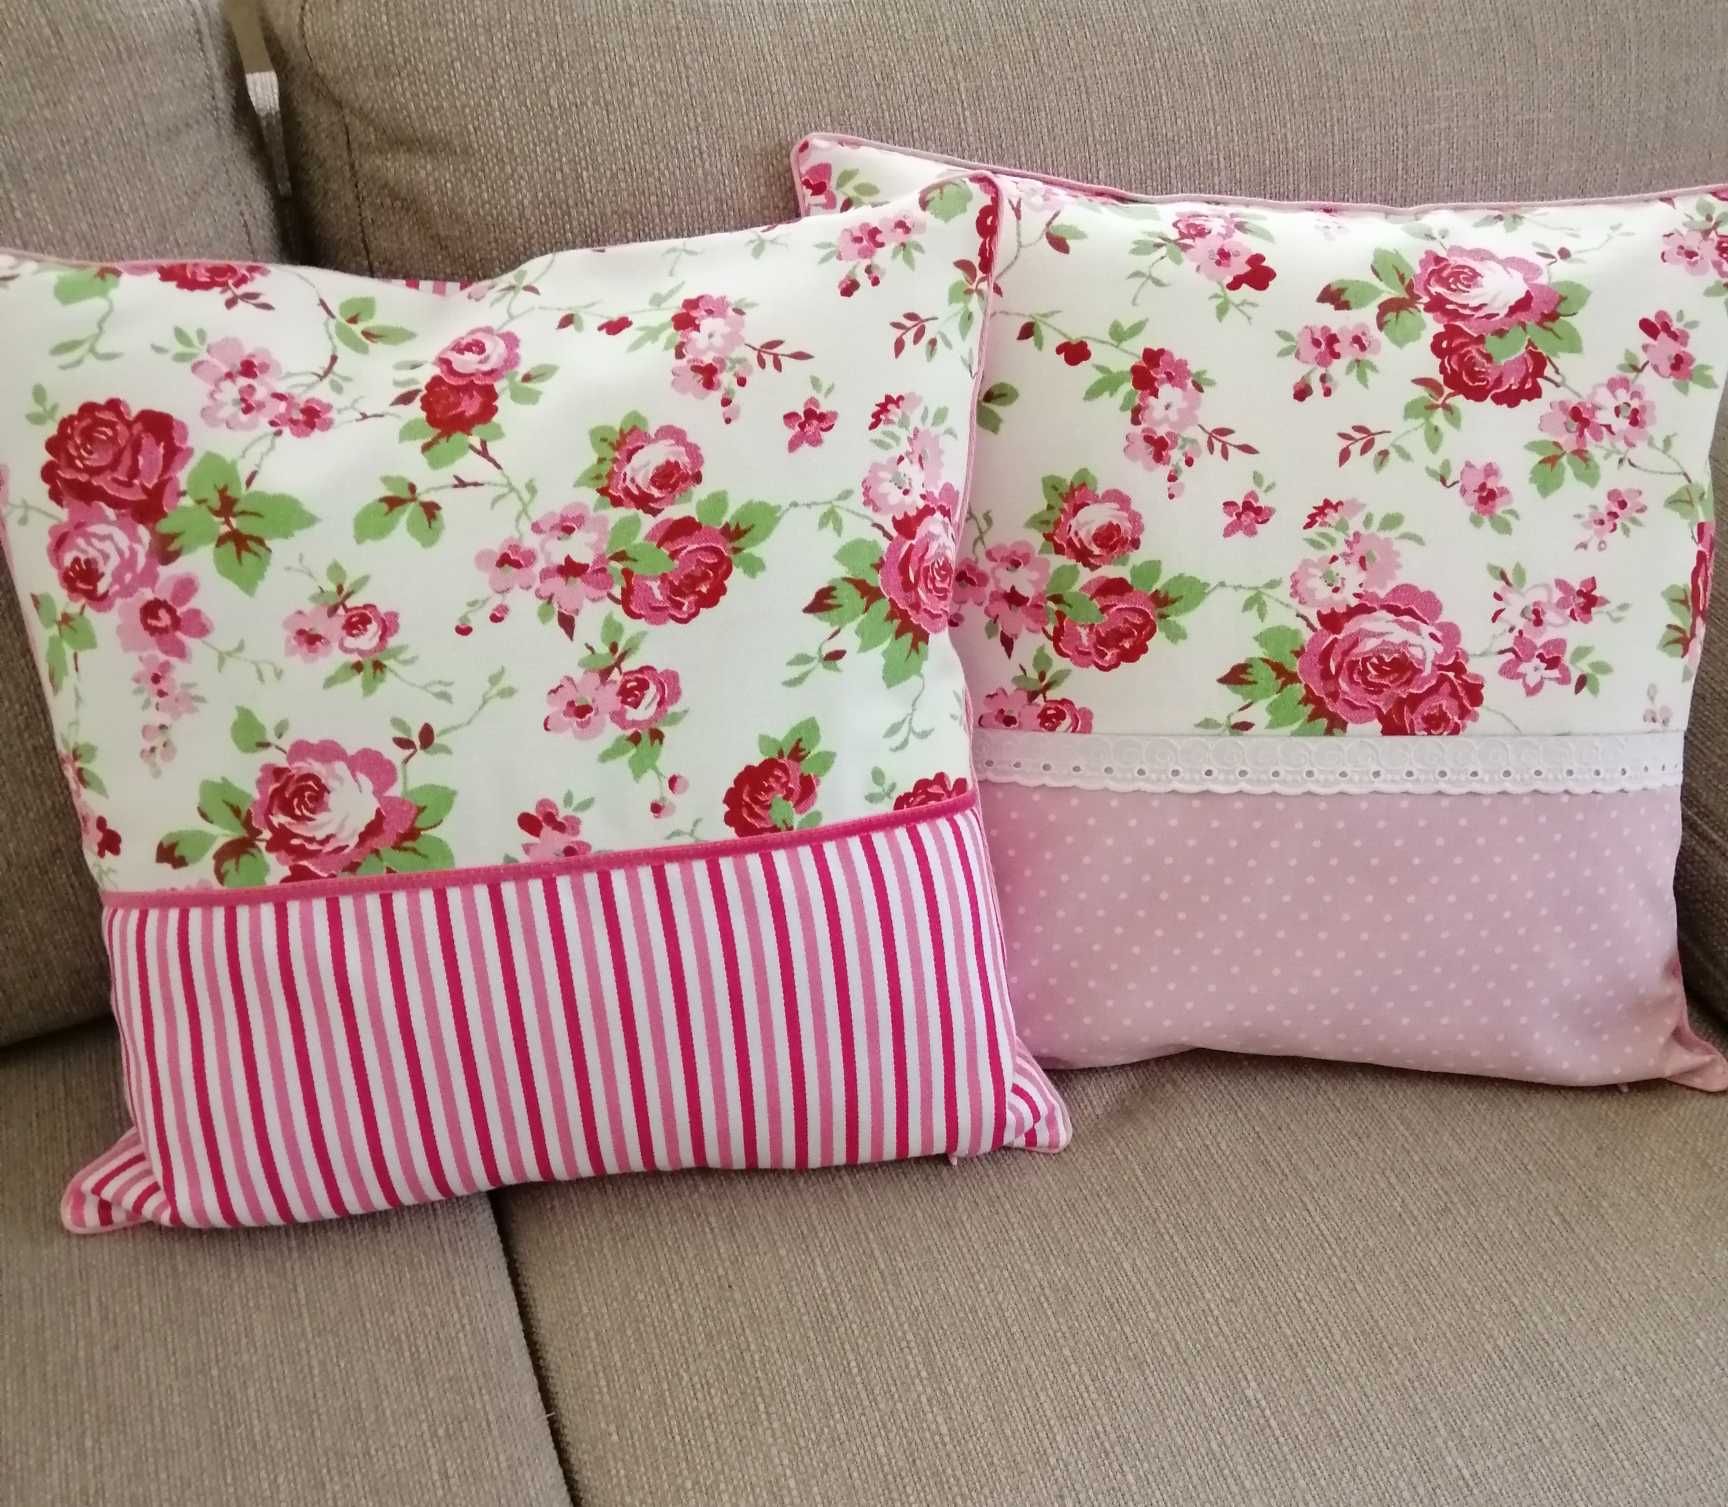 Наволочки для диванных подушек в романтическом стиле, прованс